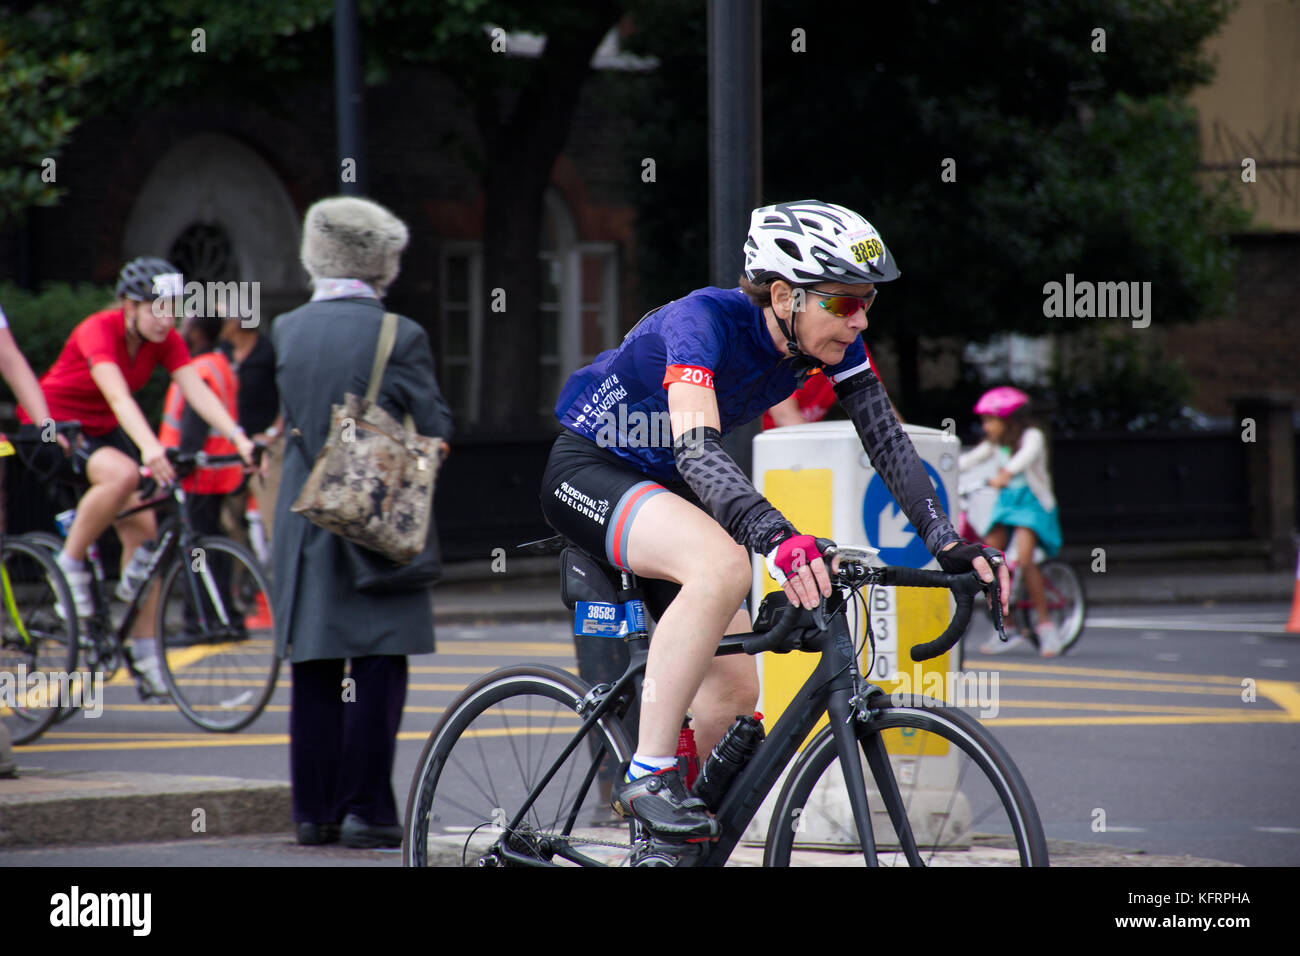 Frau mittleren Alters, die in den weißen Helm, schwarz Fahrrad auf jährlichen London prudential Radrennen. London, Vereinigtes Königreich, Sommer 2017. Stockfoto